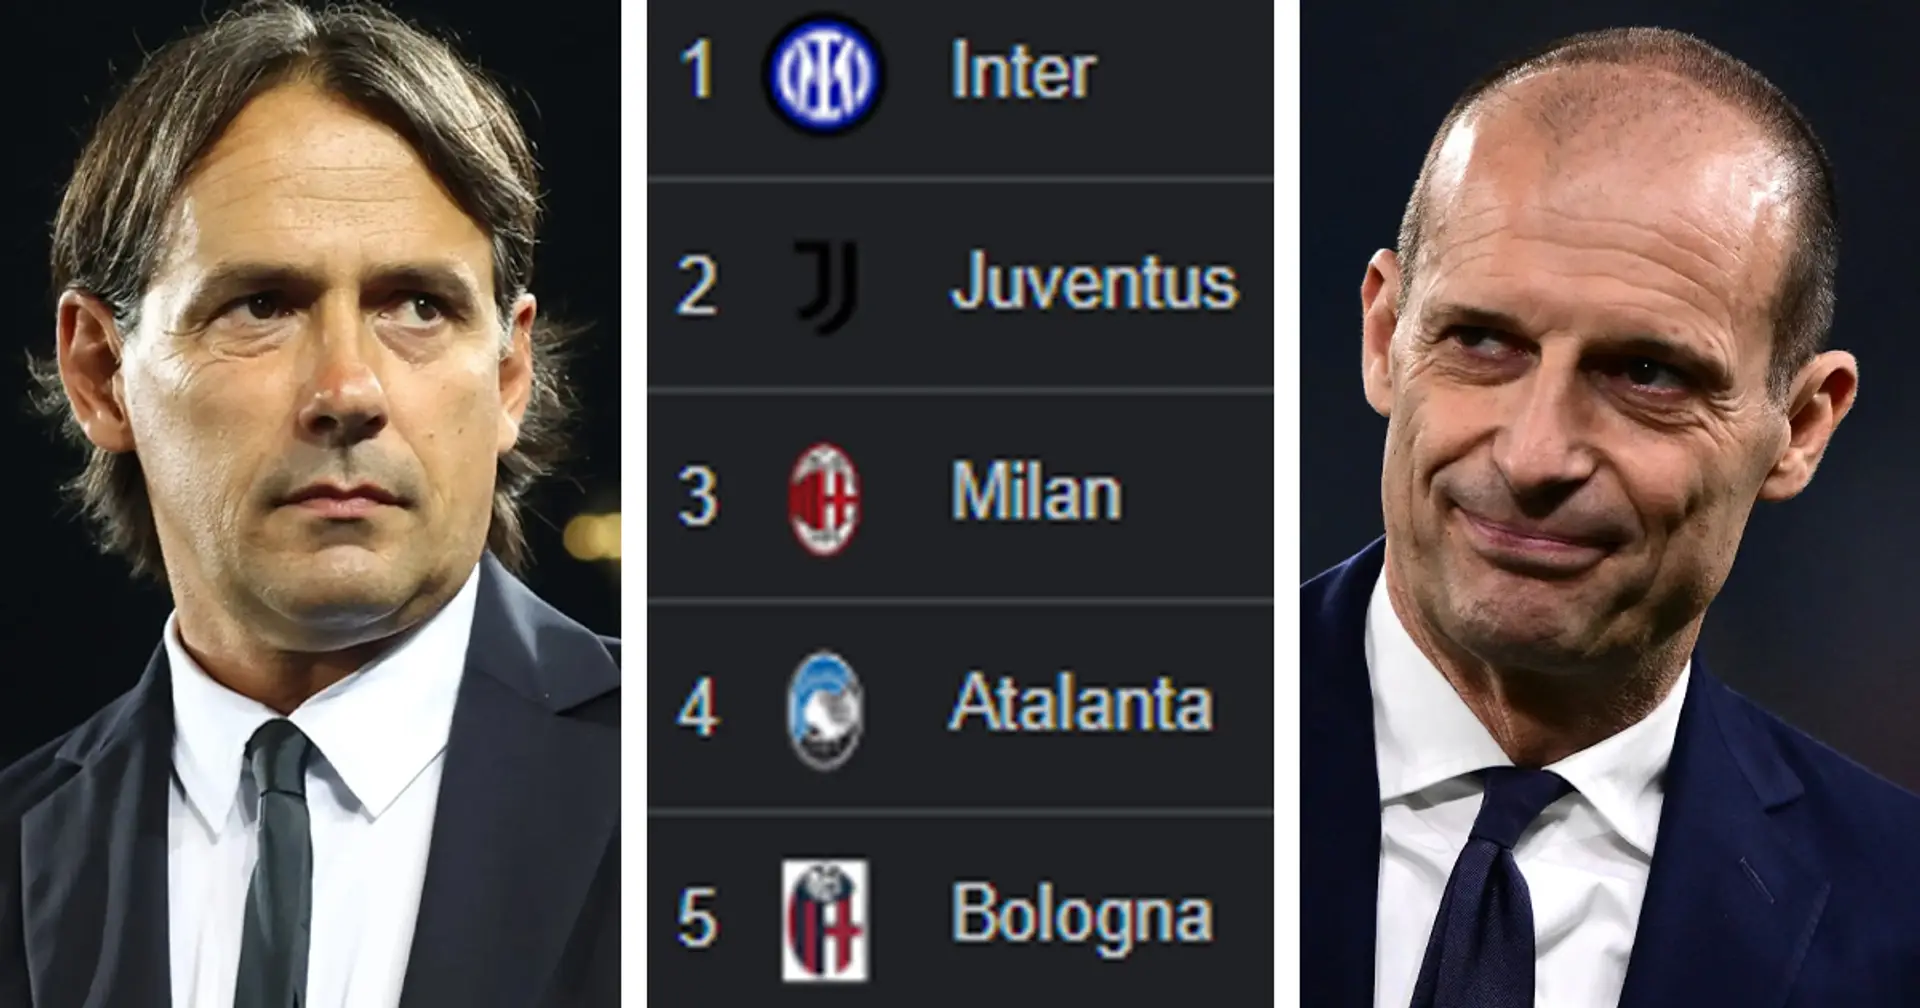 Anche l'Inter può perdere punti! Il discorso di Allegri alla Juve dopo l'ultimo ko con l'Udinese